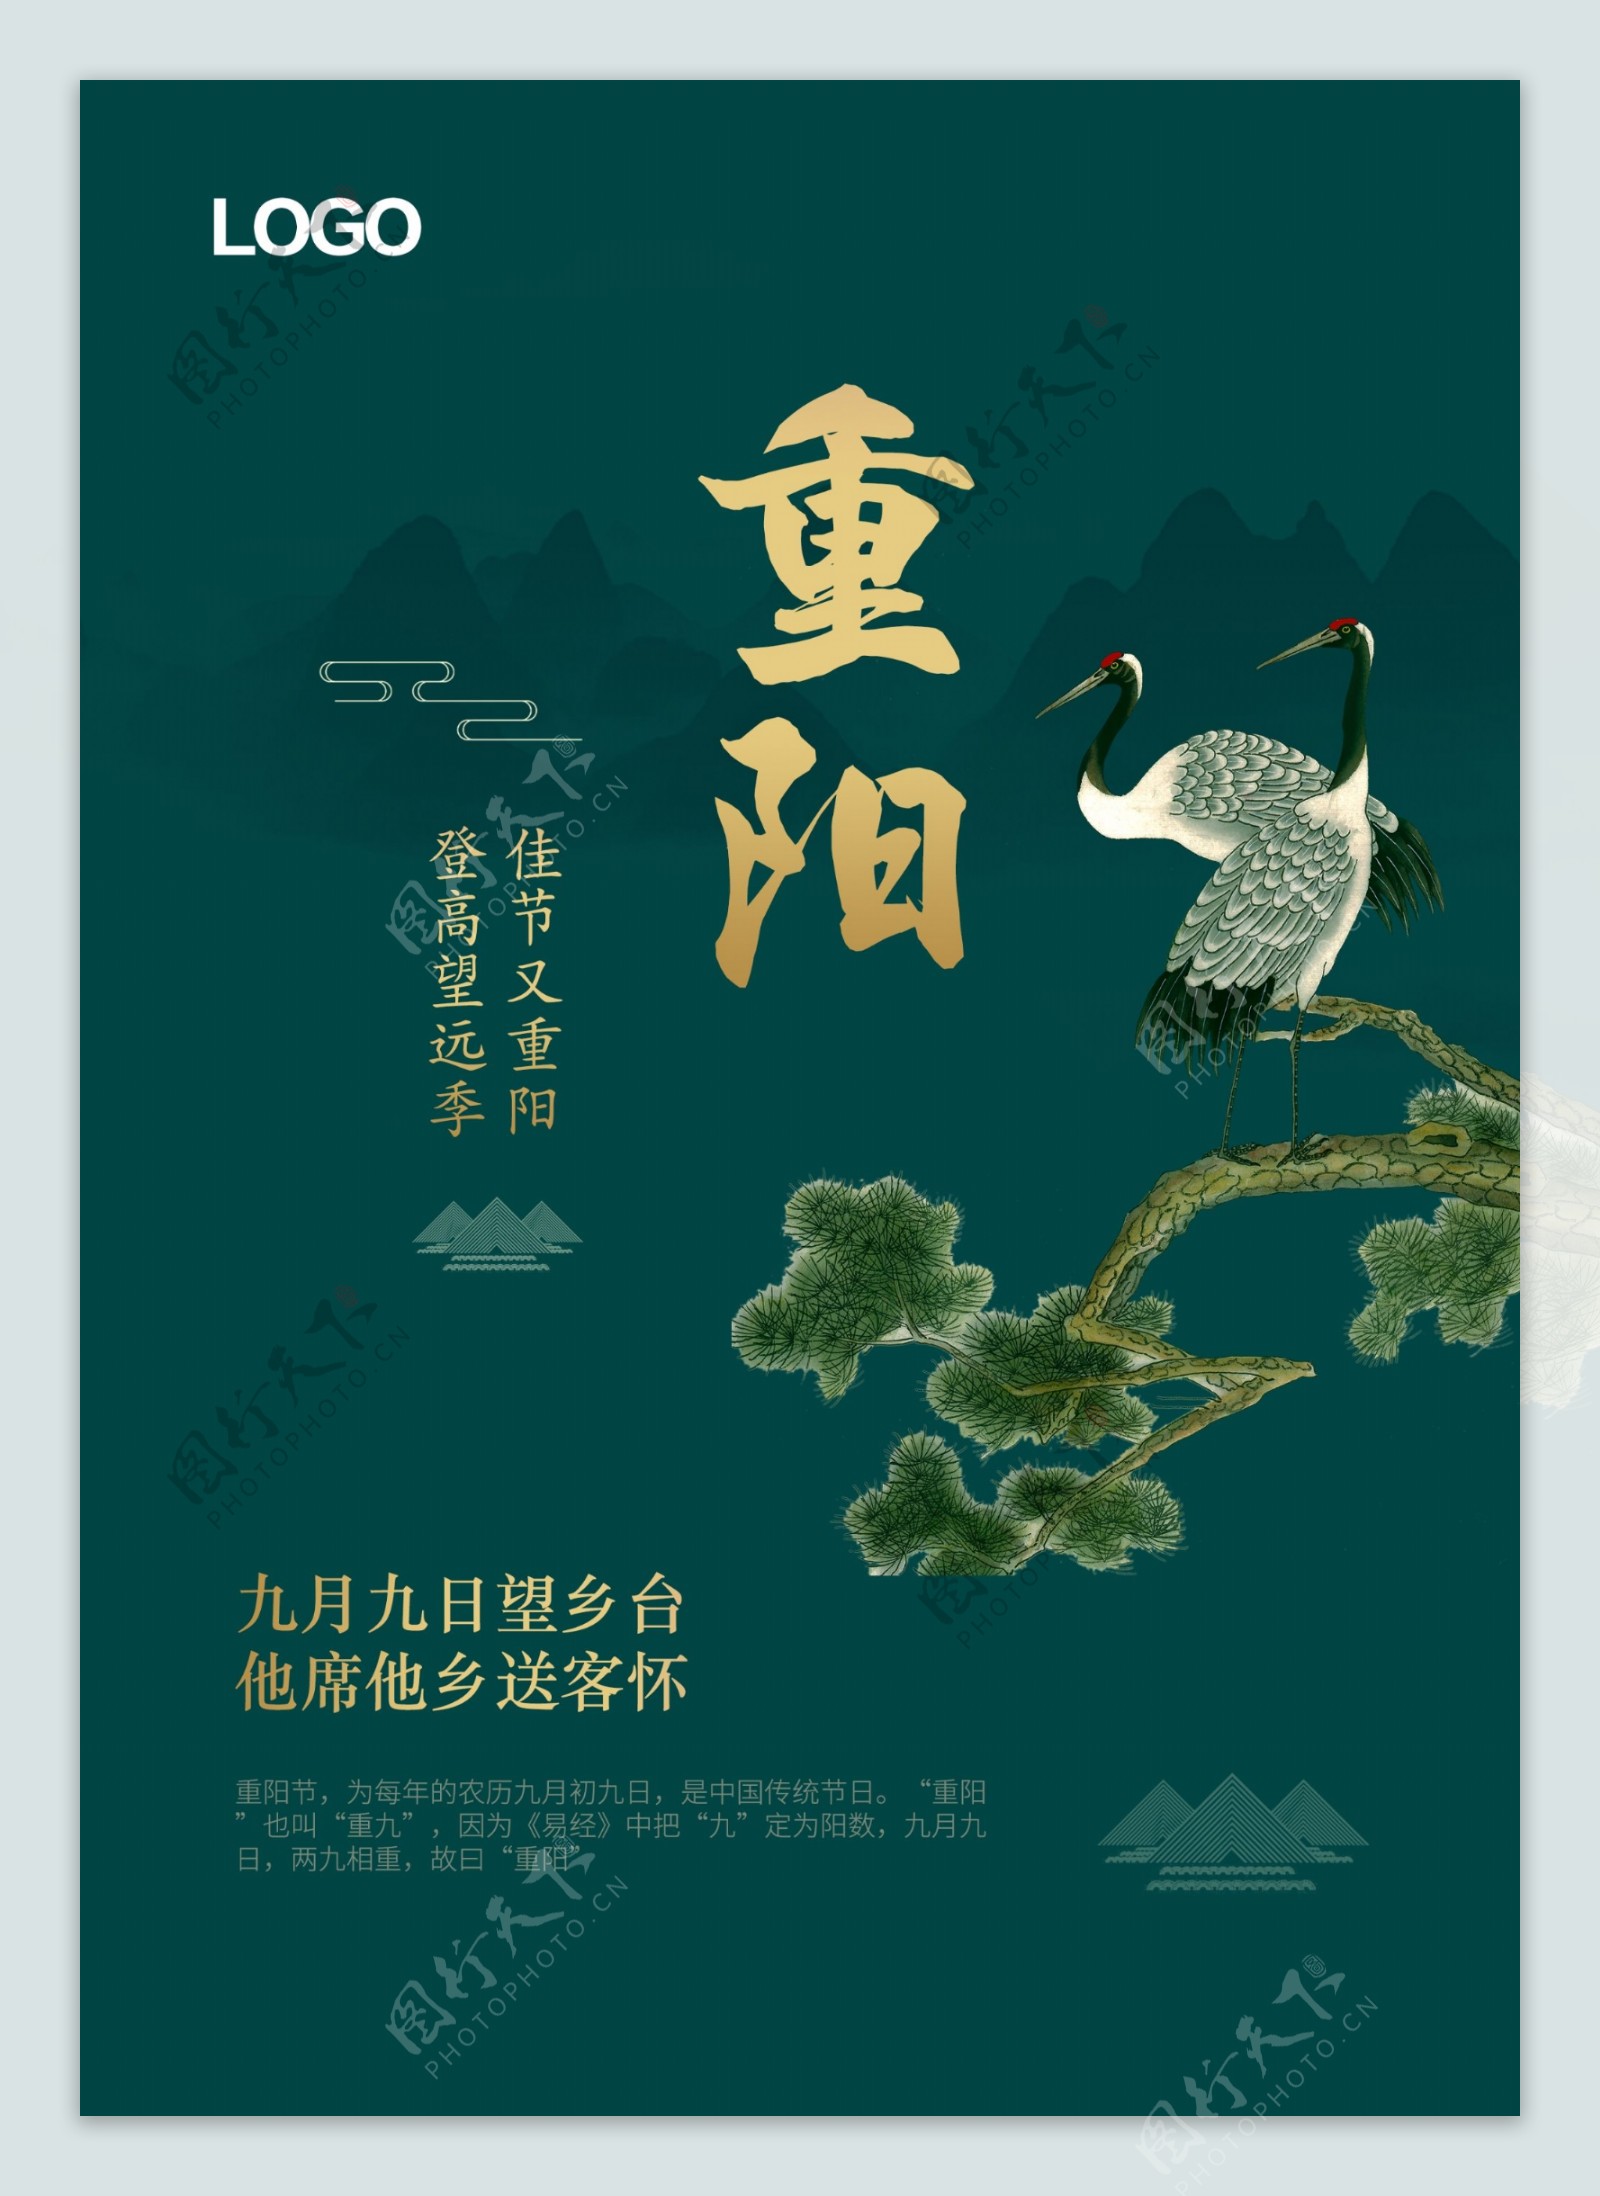 墨绿色重阳节节日海报